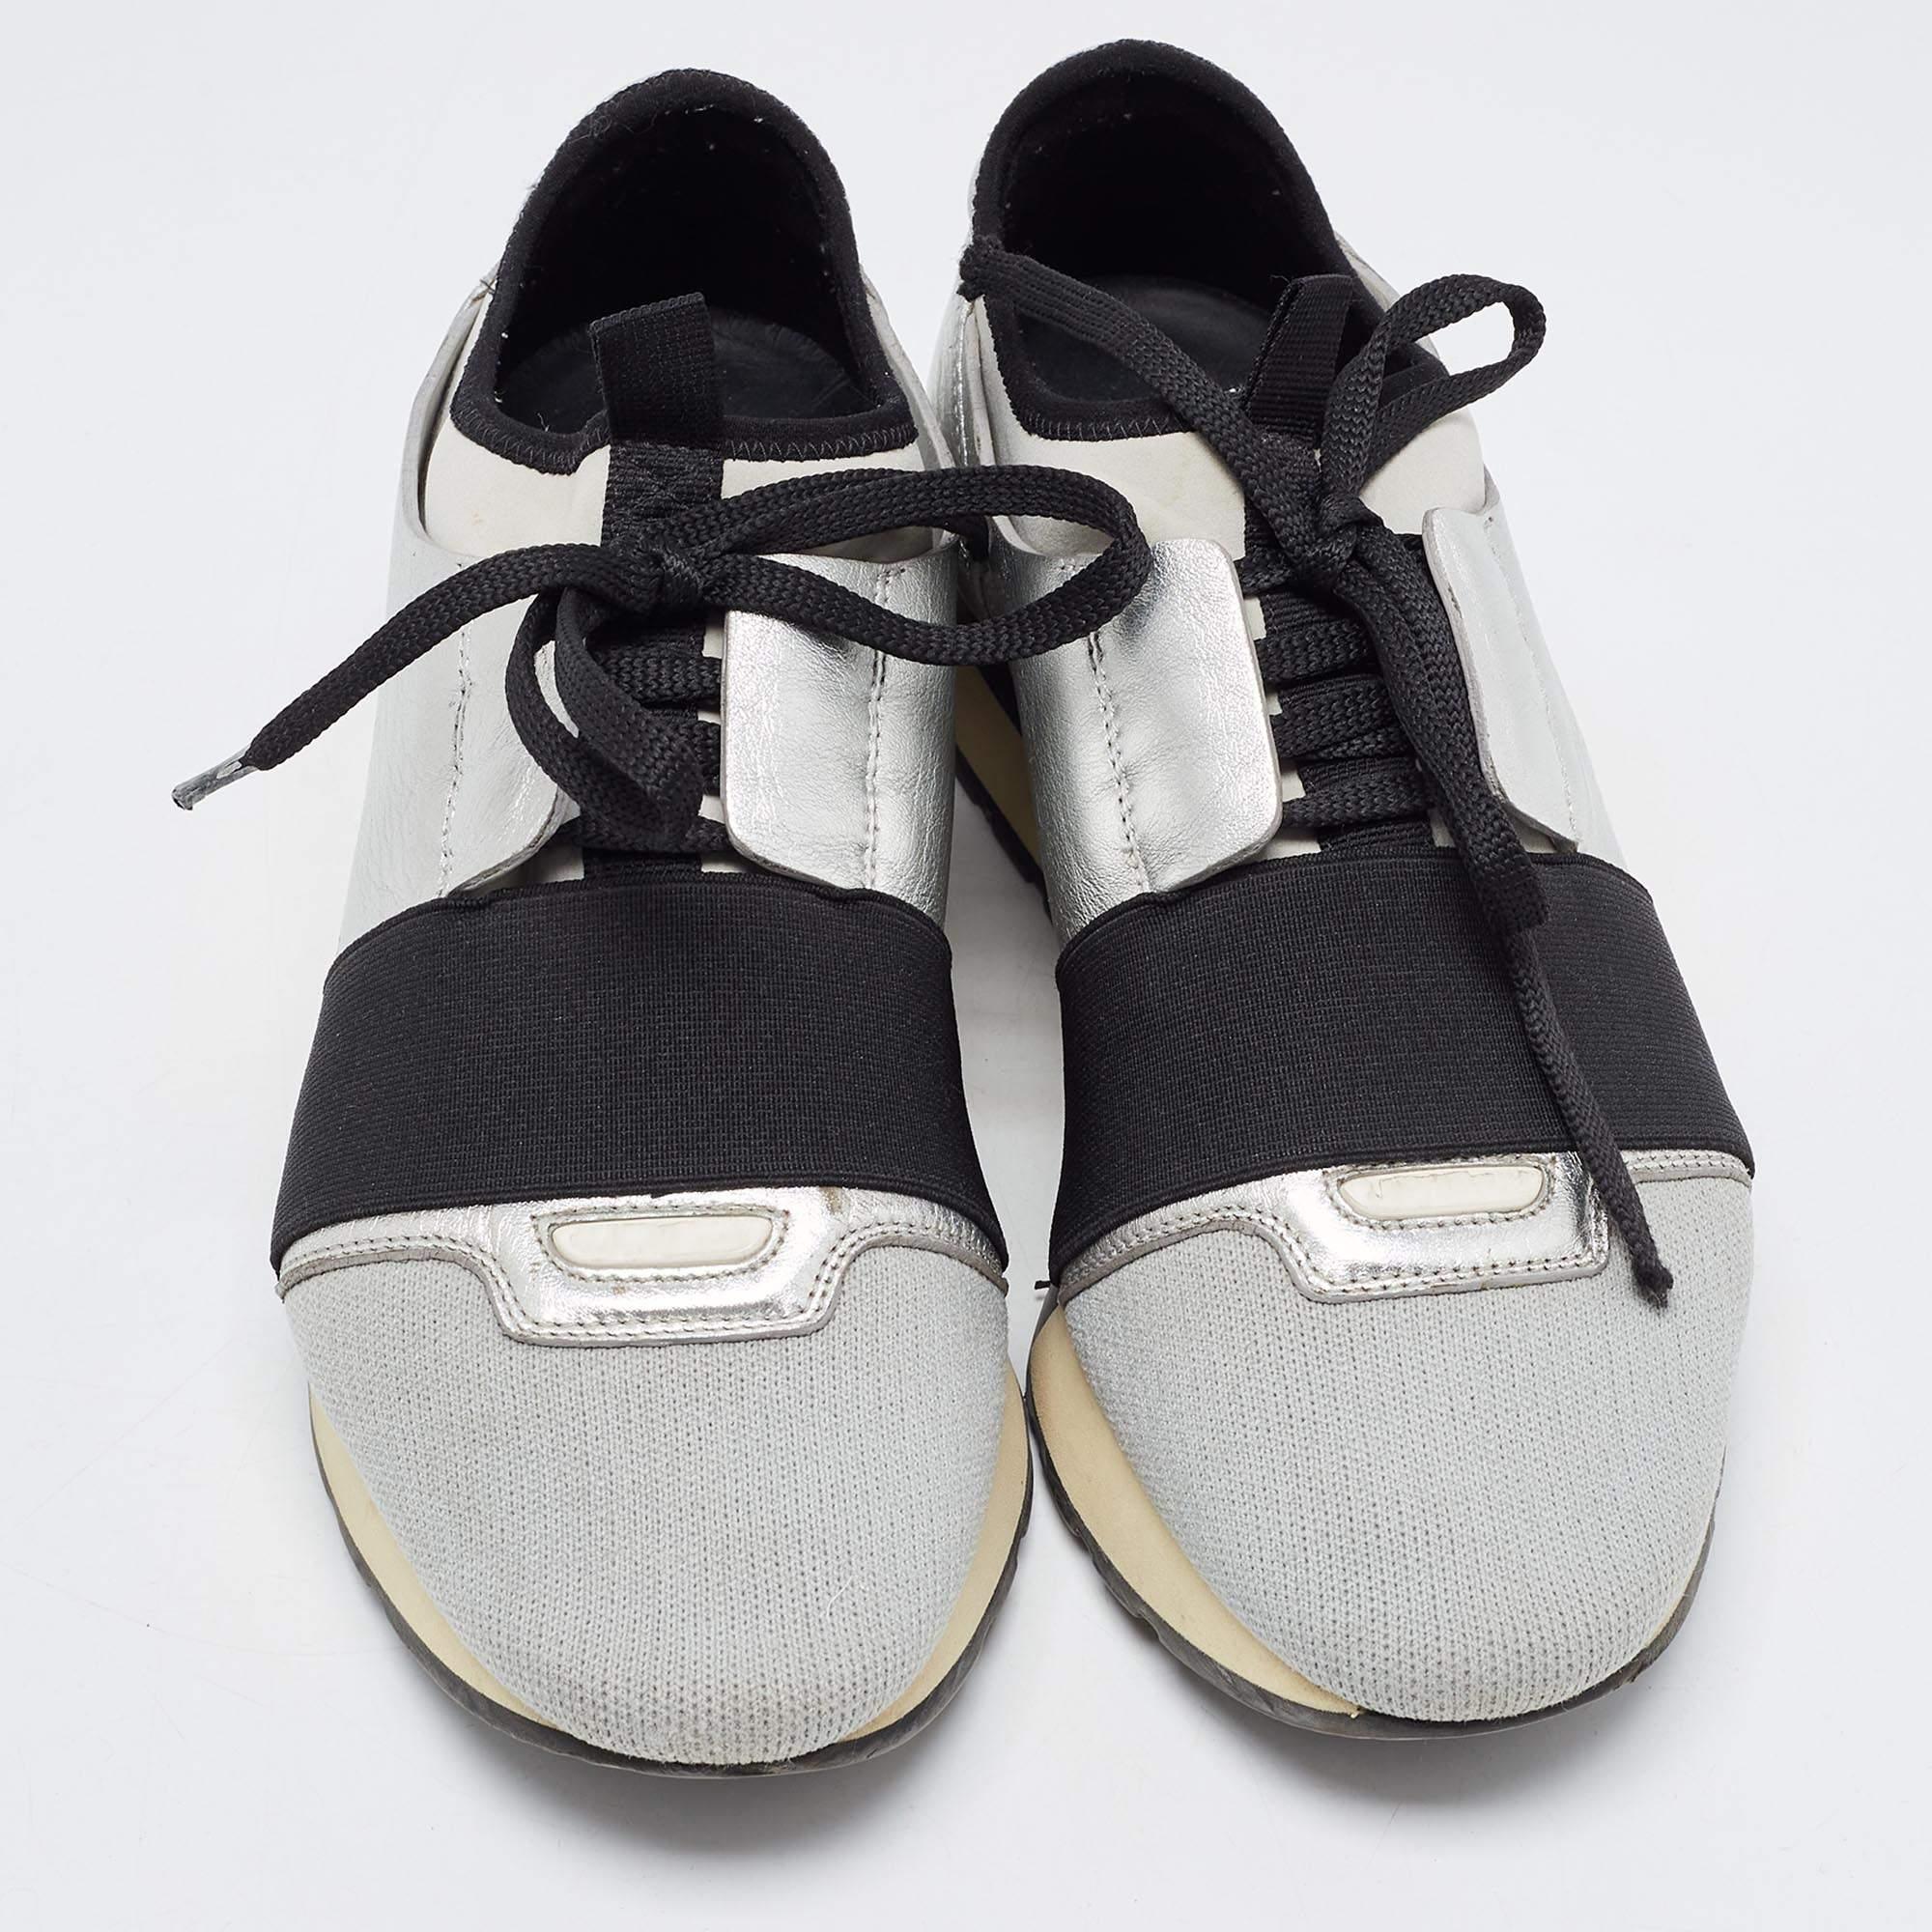 Die Balenciaga Race Runner Sneakers wurden aus hochwertigen MATERIALEN gefertigt und zeichnen sich durch eine schicke Silhouette aus. Sie haben eine überzogene Zehenpartie, Riemchendetails auf dem Vorderblatt und Schnürverschlüsse. Sie sind mit